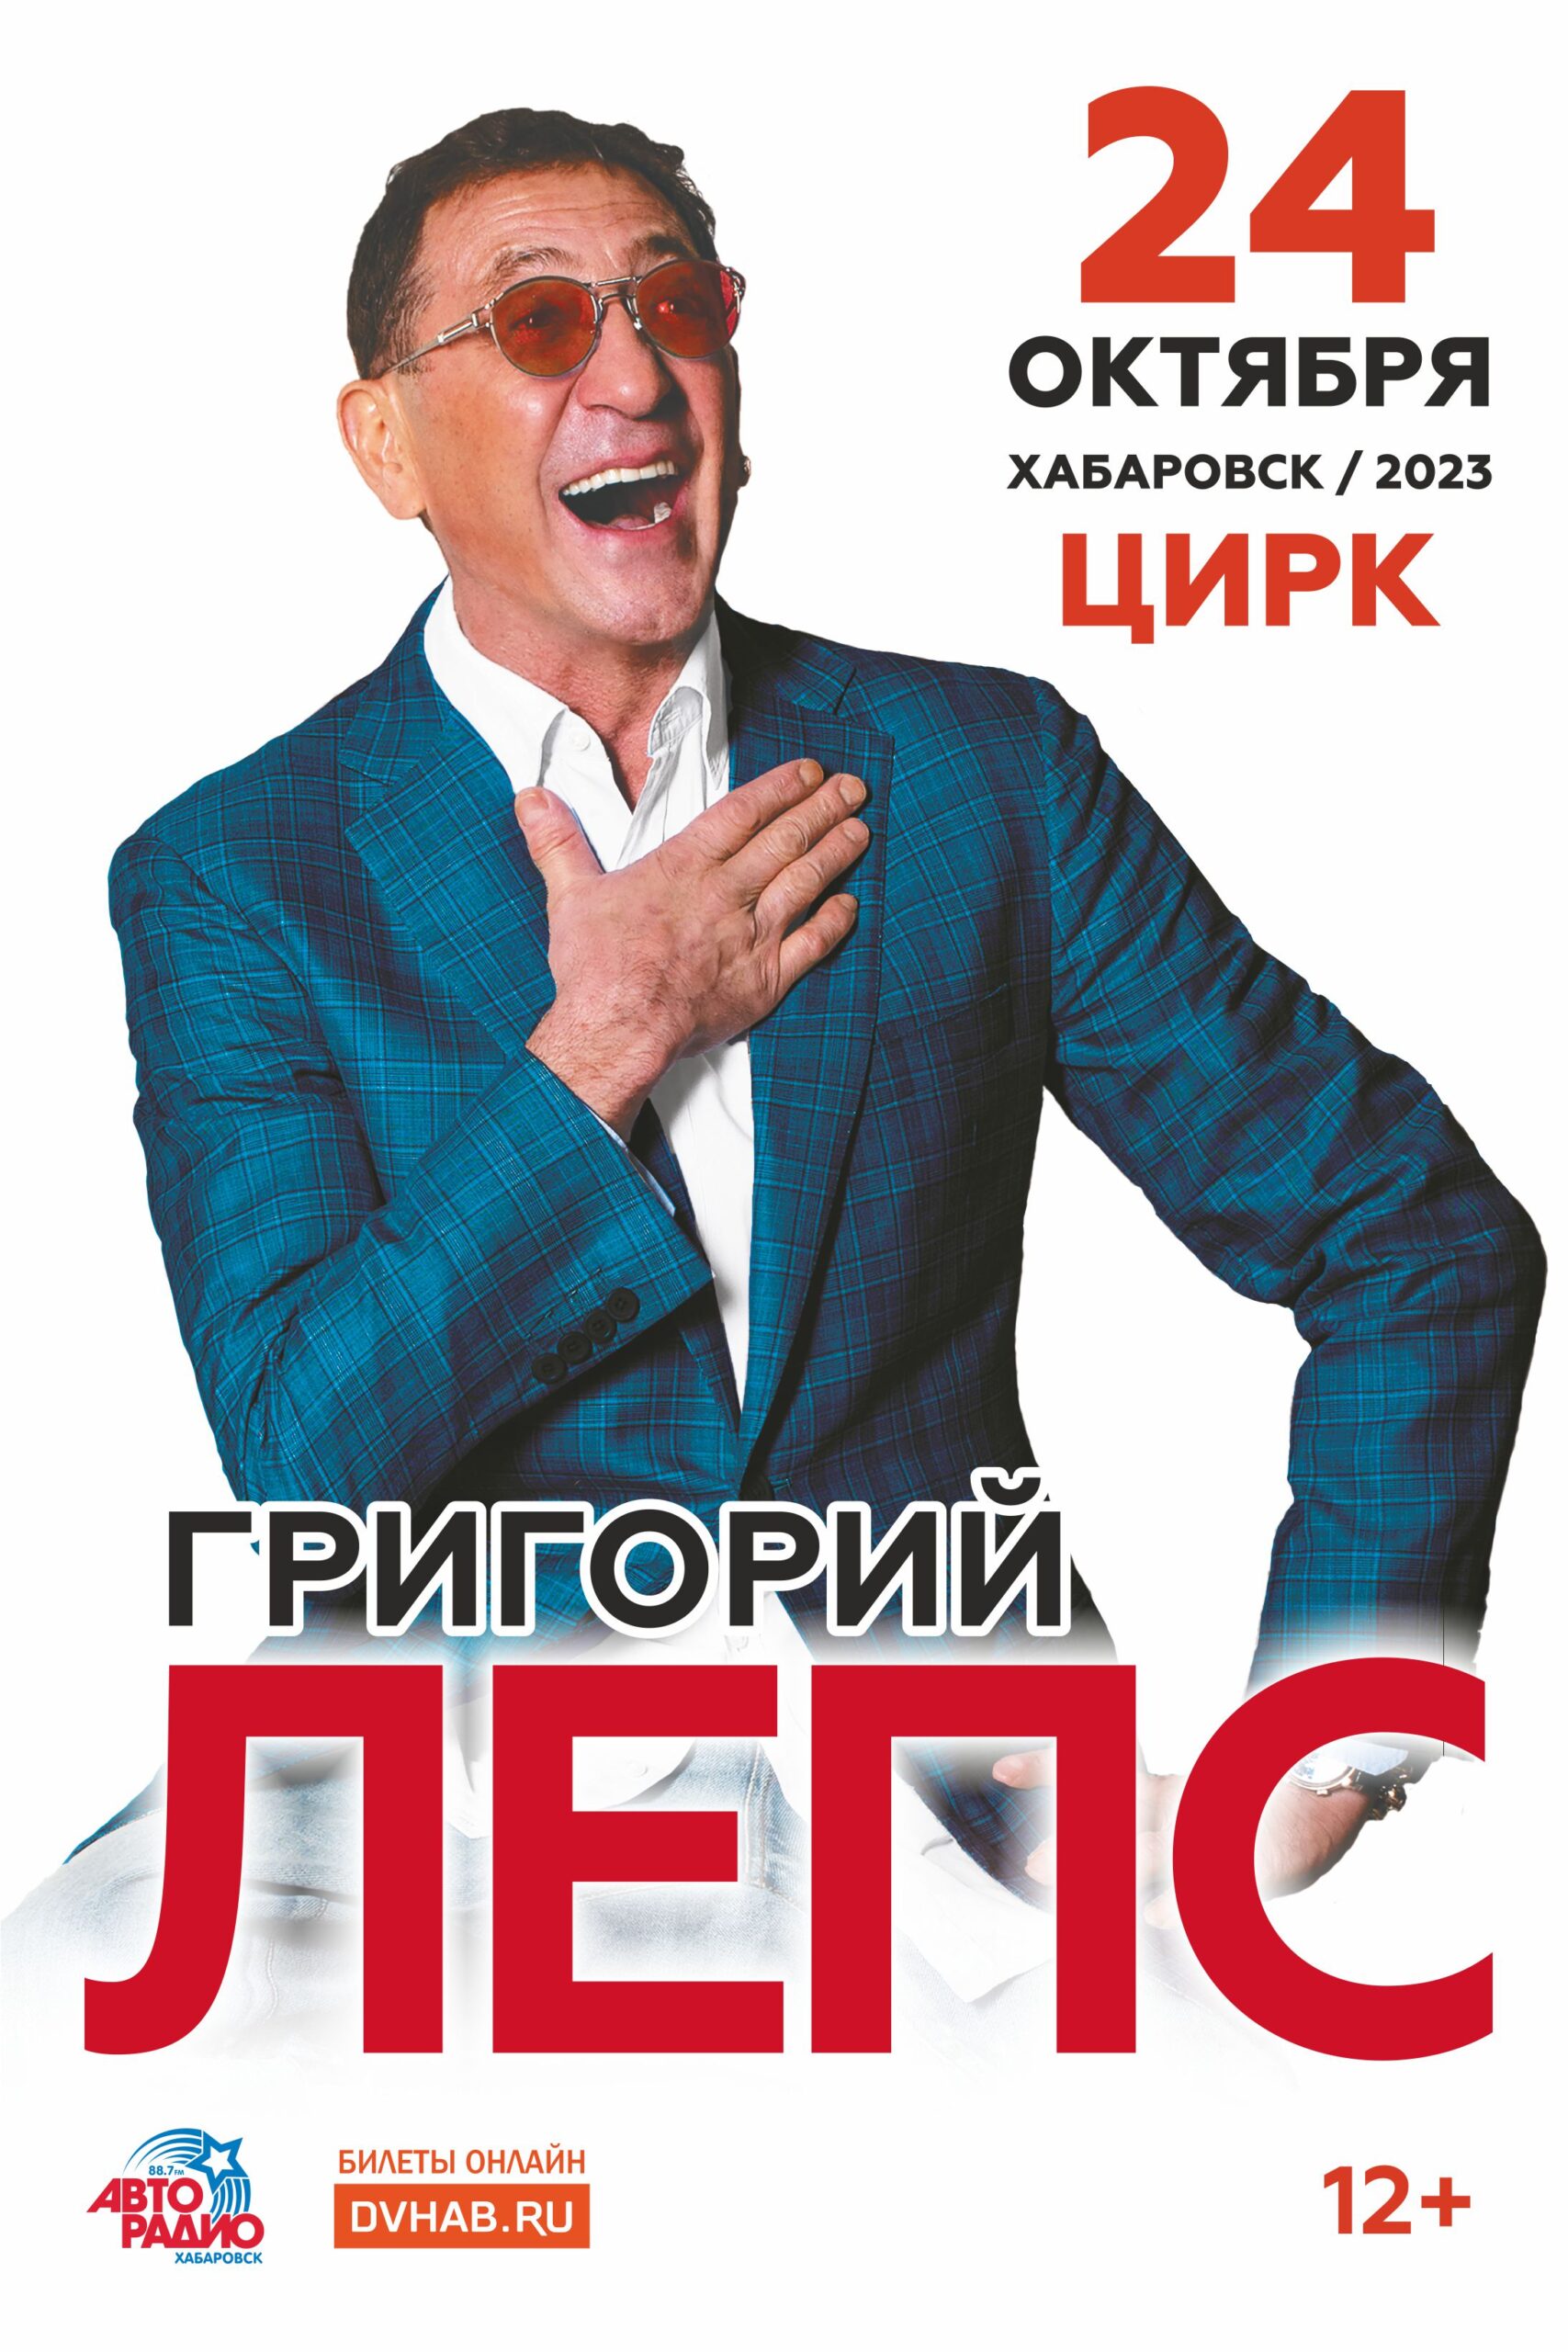 You are currently viewing Народный артист России Григорий ЛЕПС — 24 октября с большим концертом в Хабаровске!